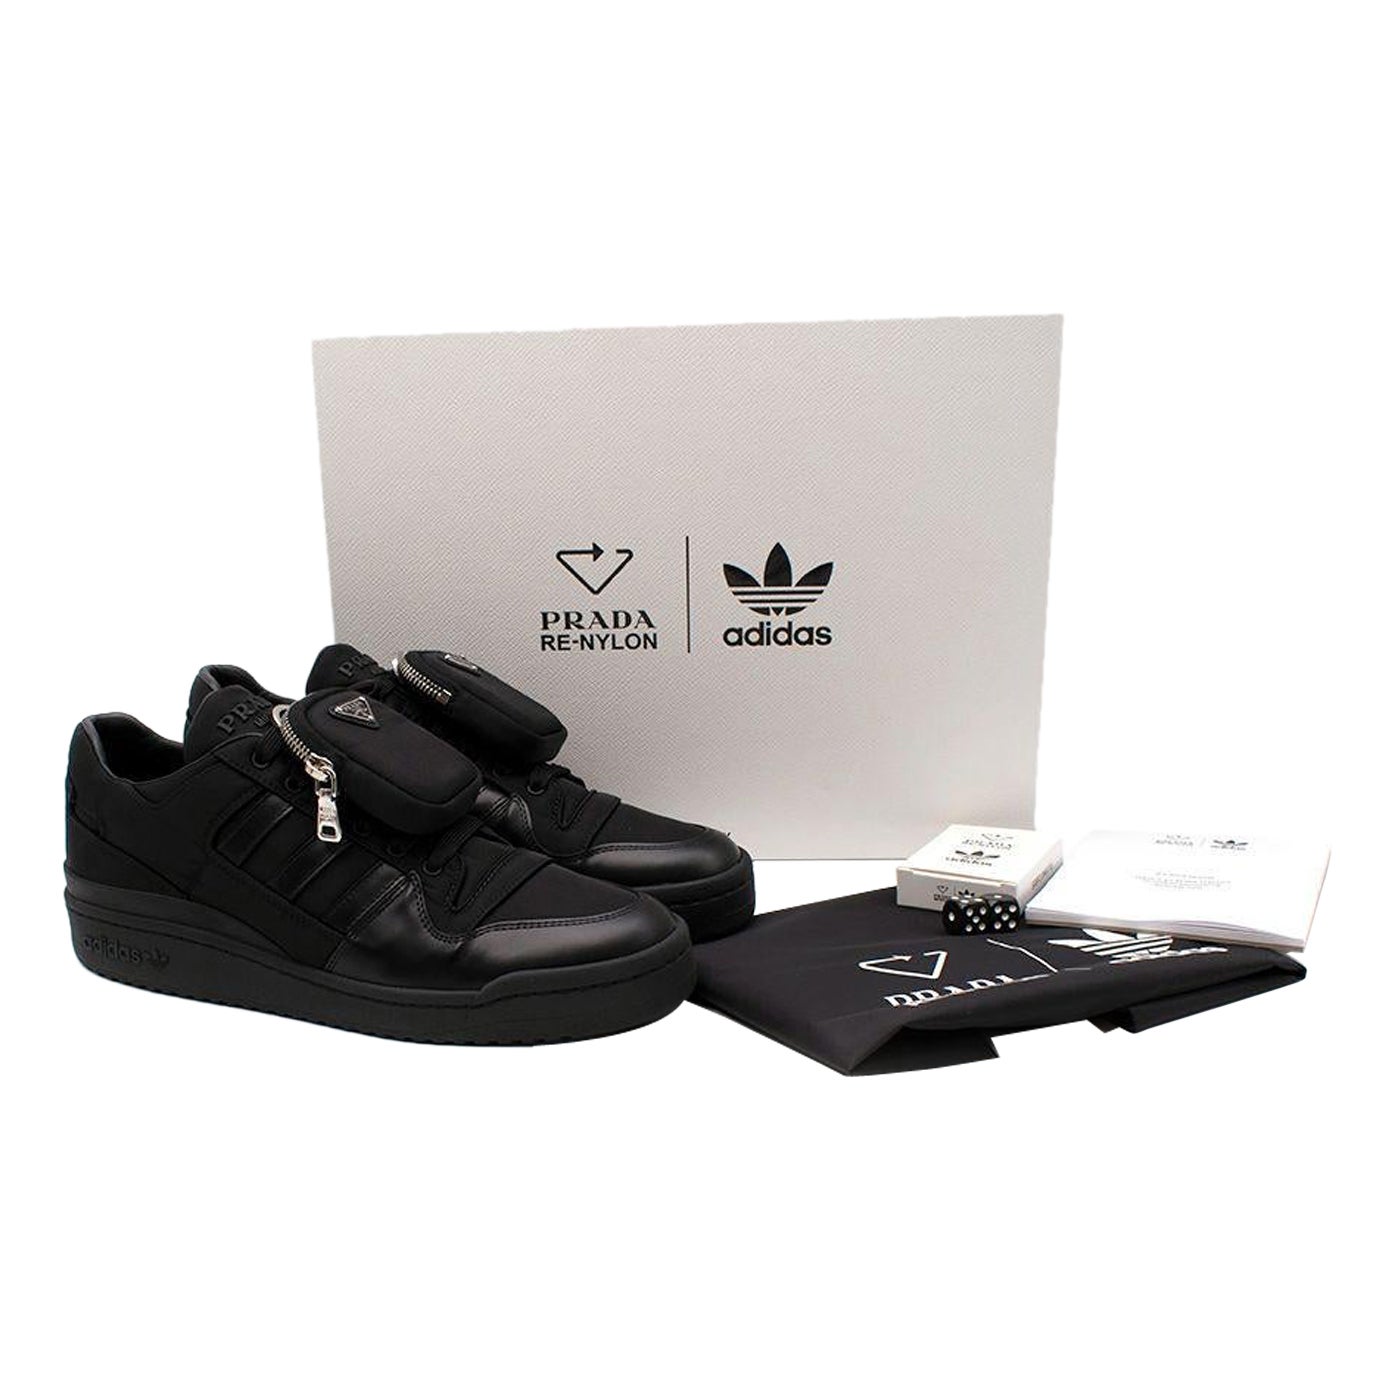 Prada x Adidas Black Re-Nylon Forum Sneakers - Size 44EU For Sale at 1stDibs